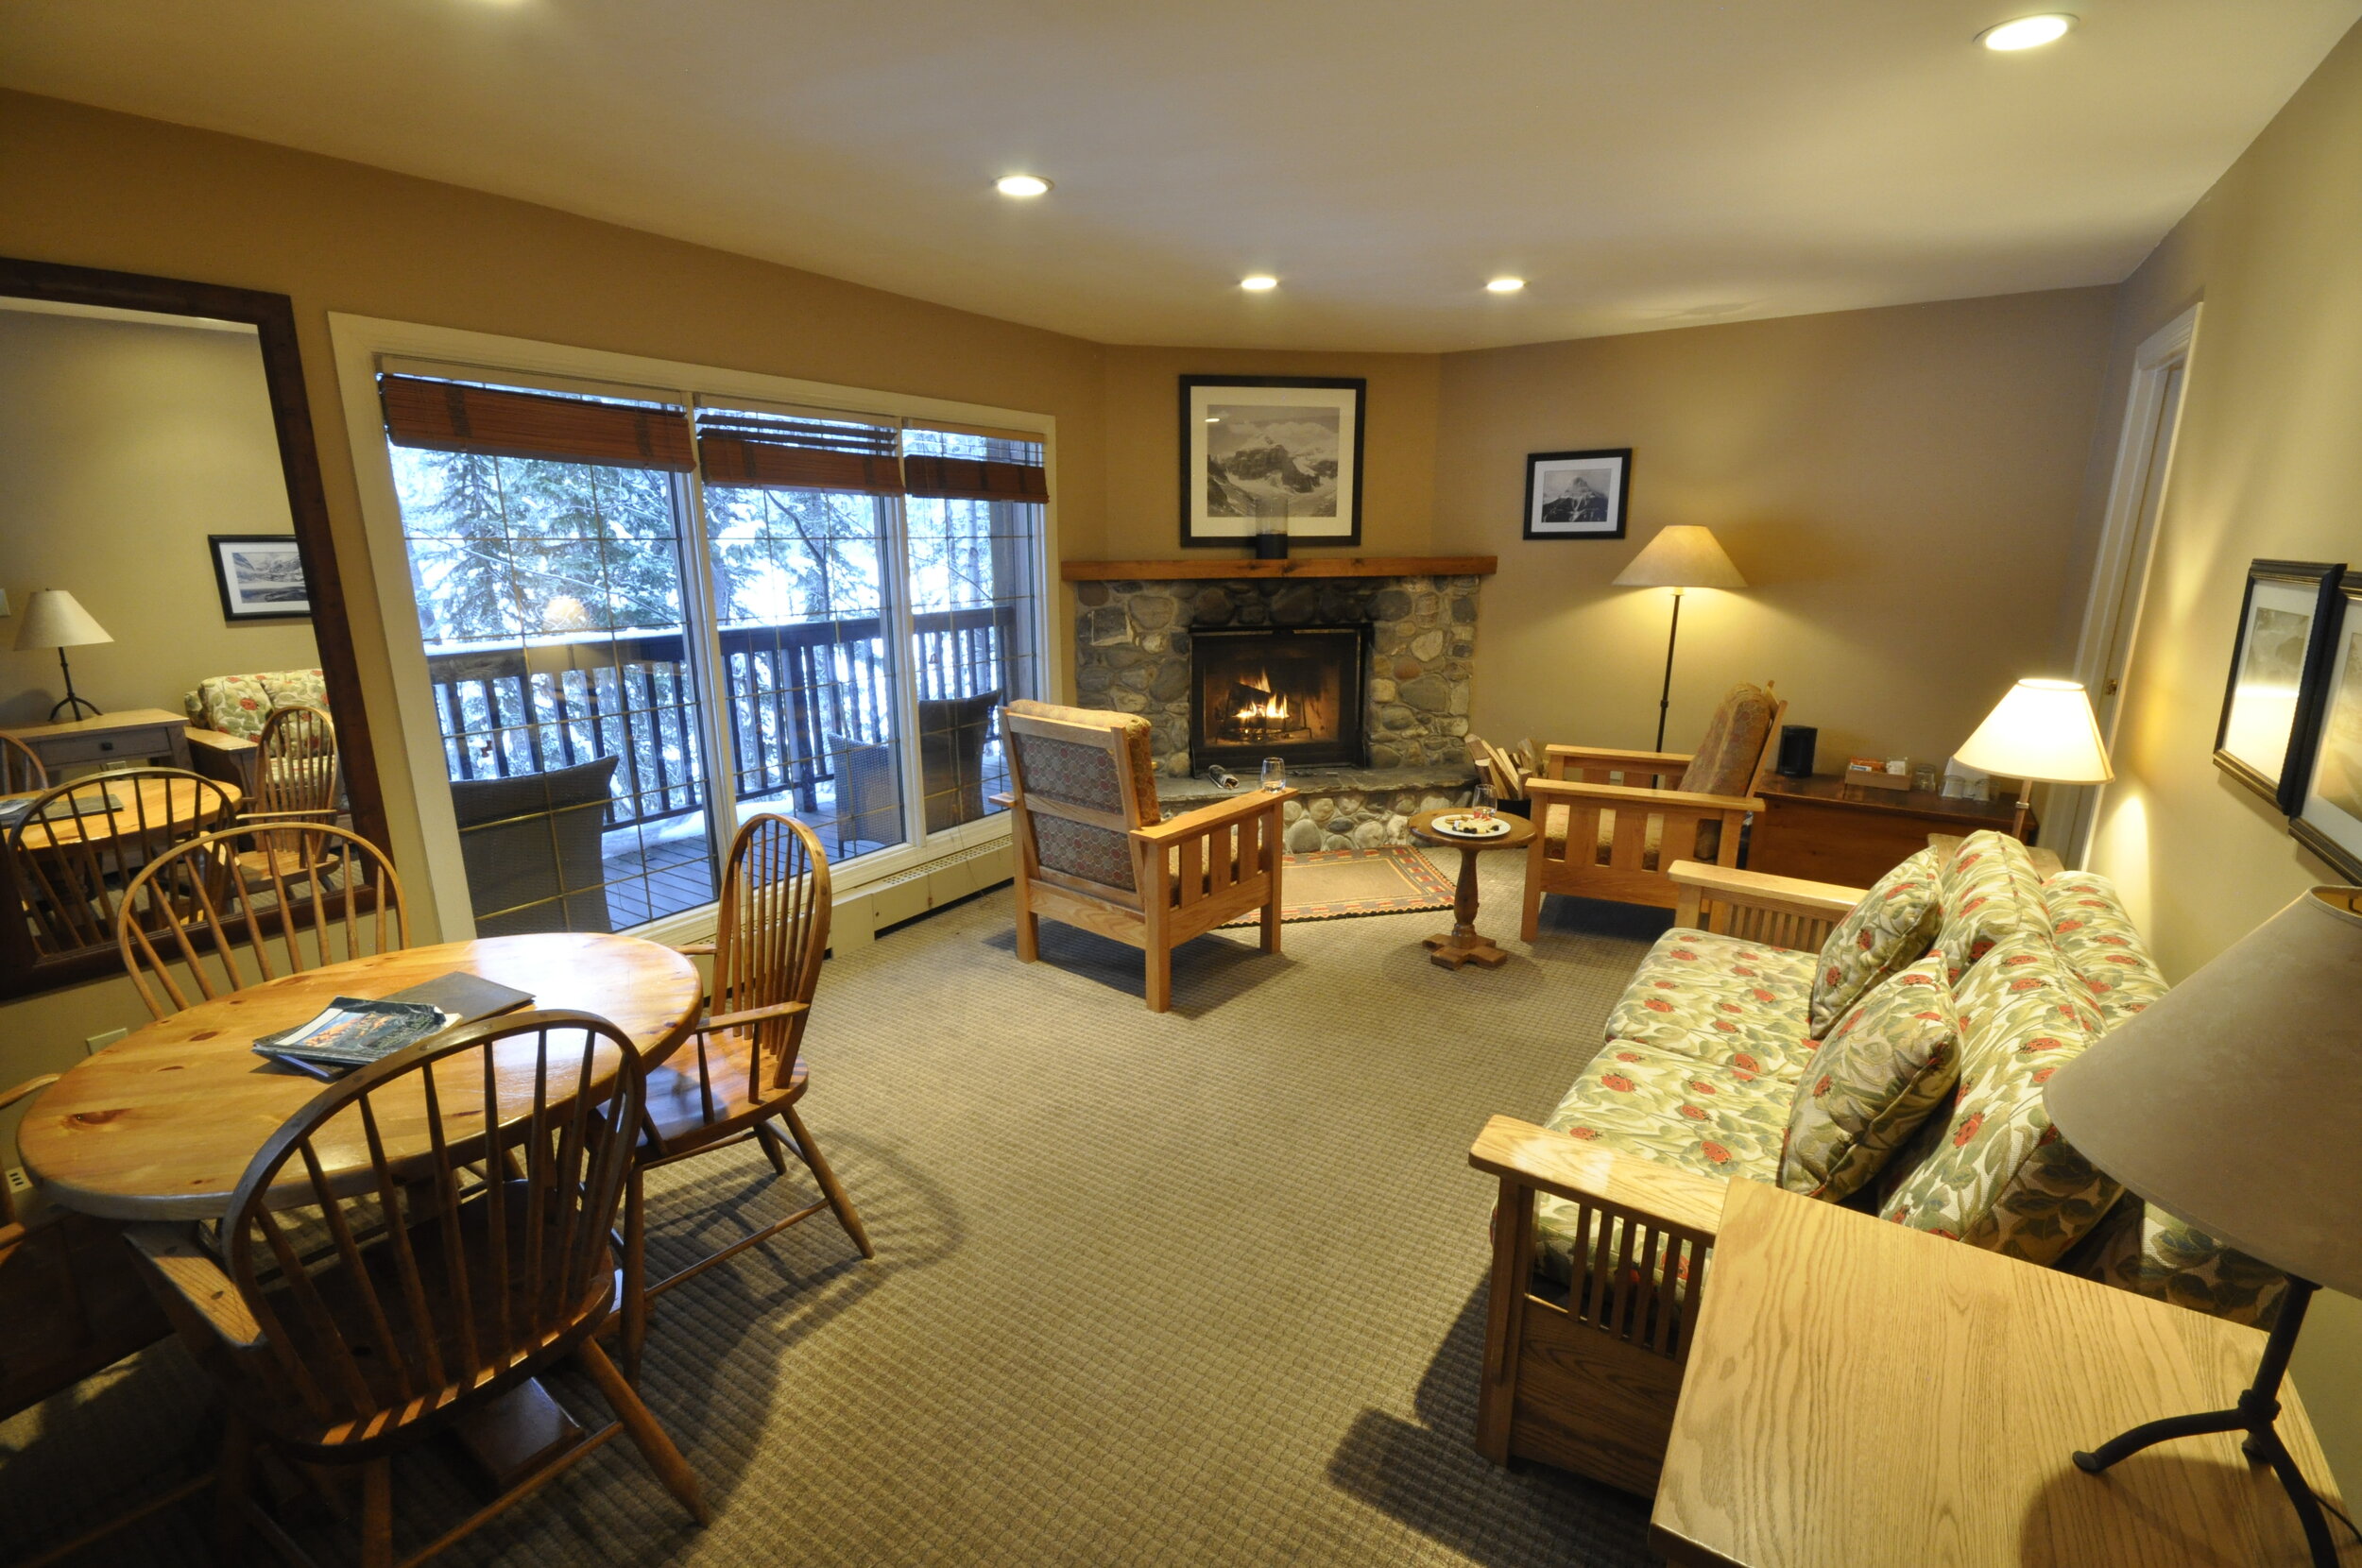  Room interior at Emerald Lake Lodge. Photo by Tera Swanson. 